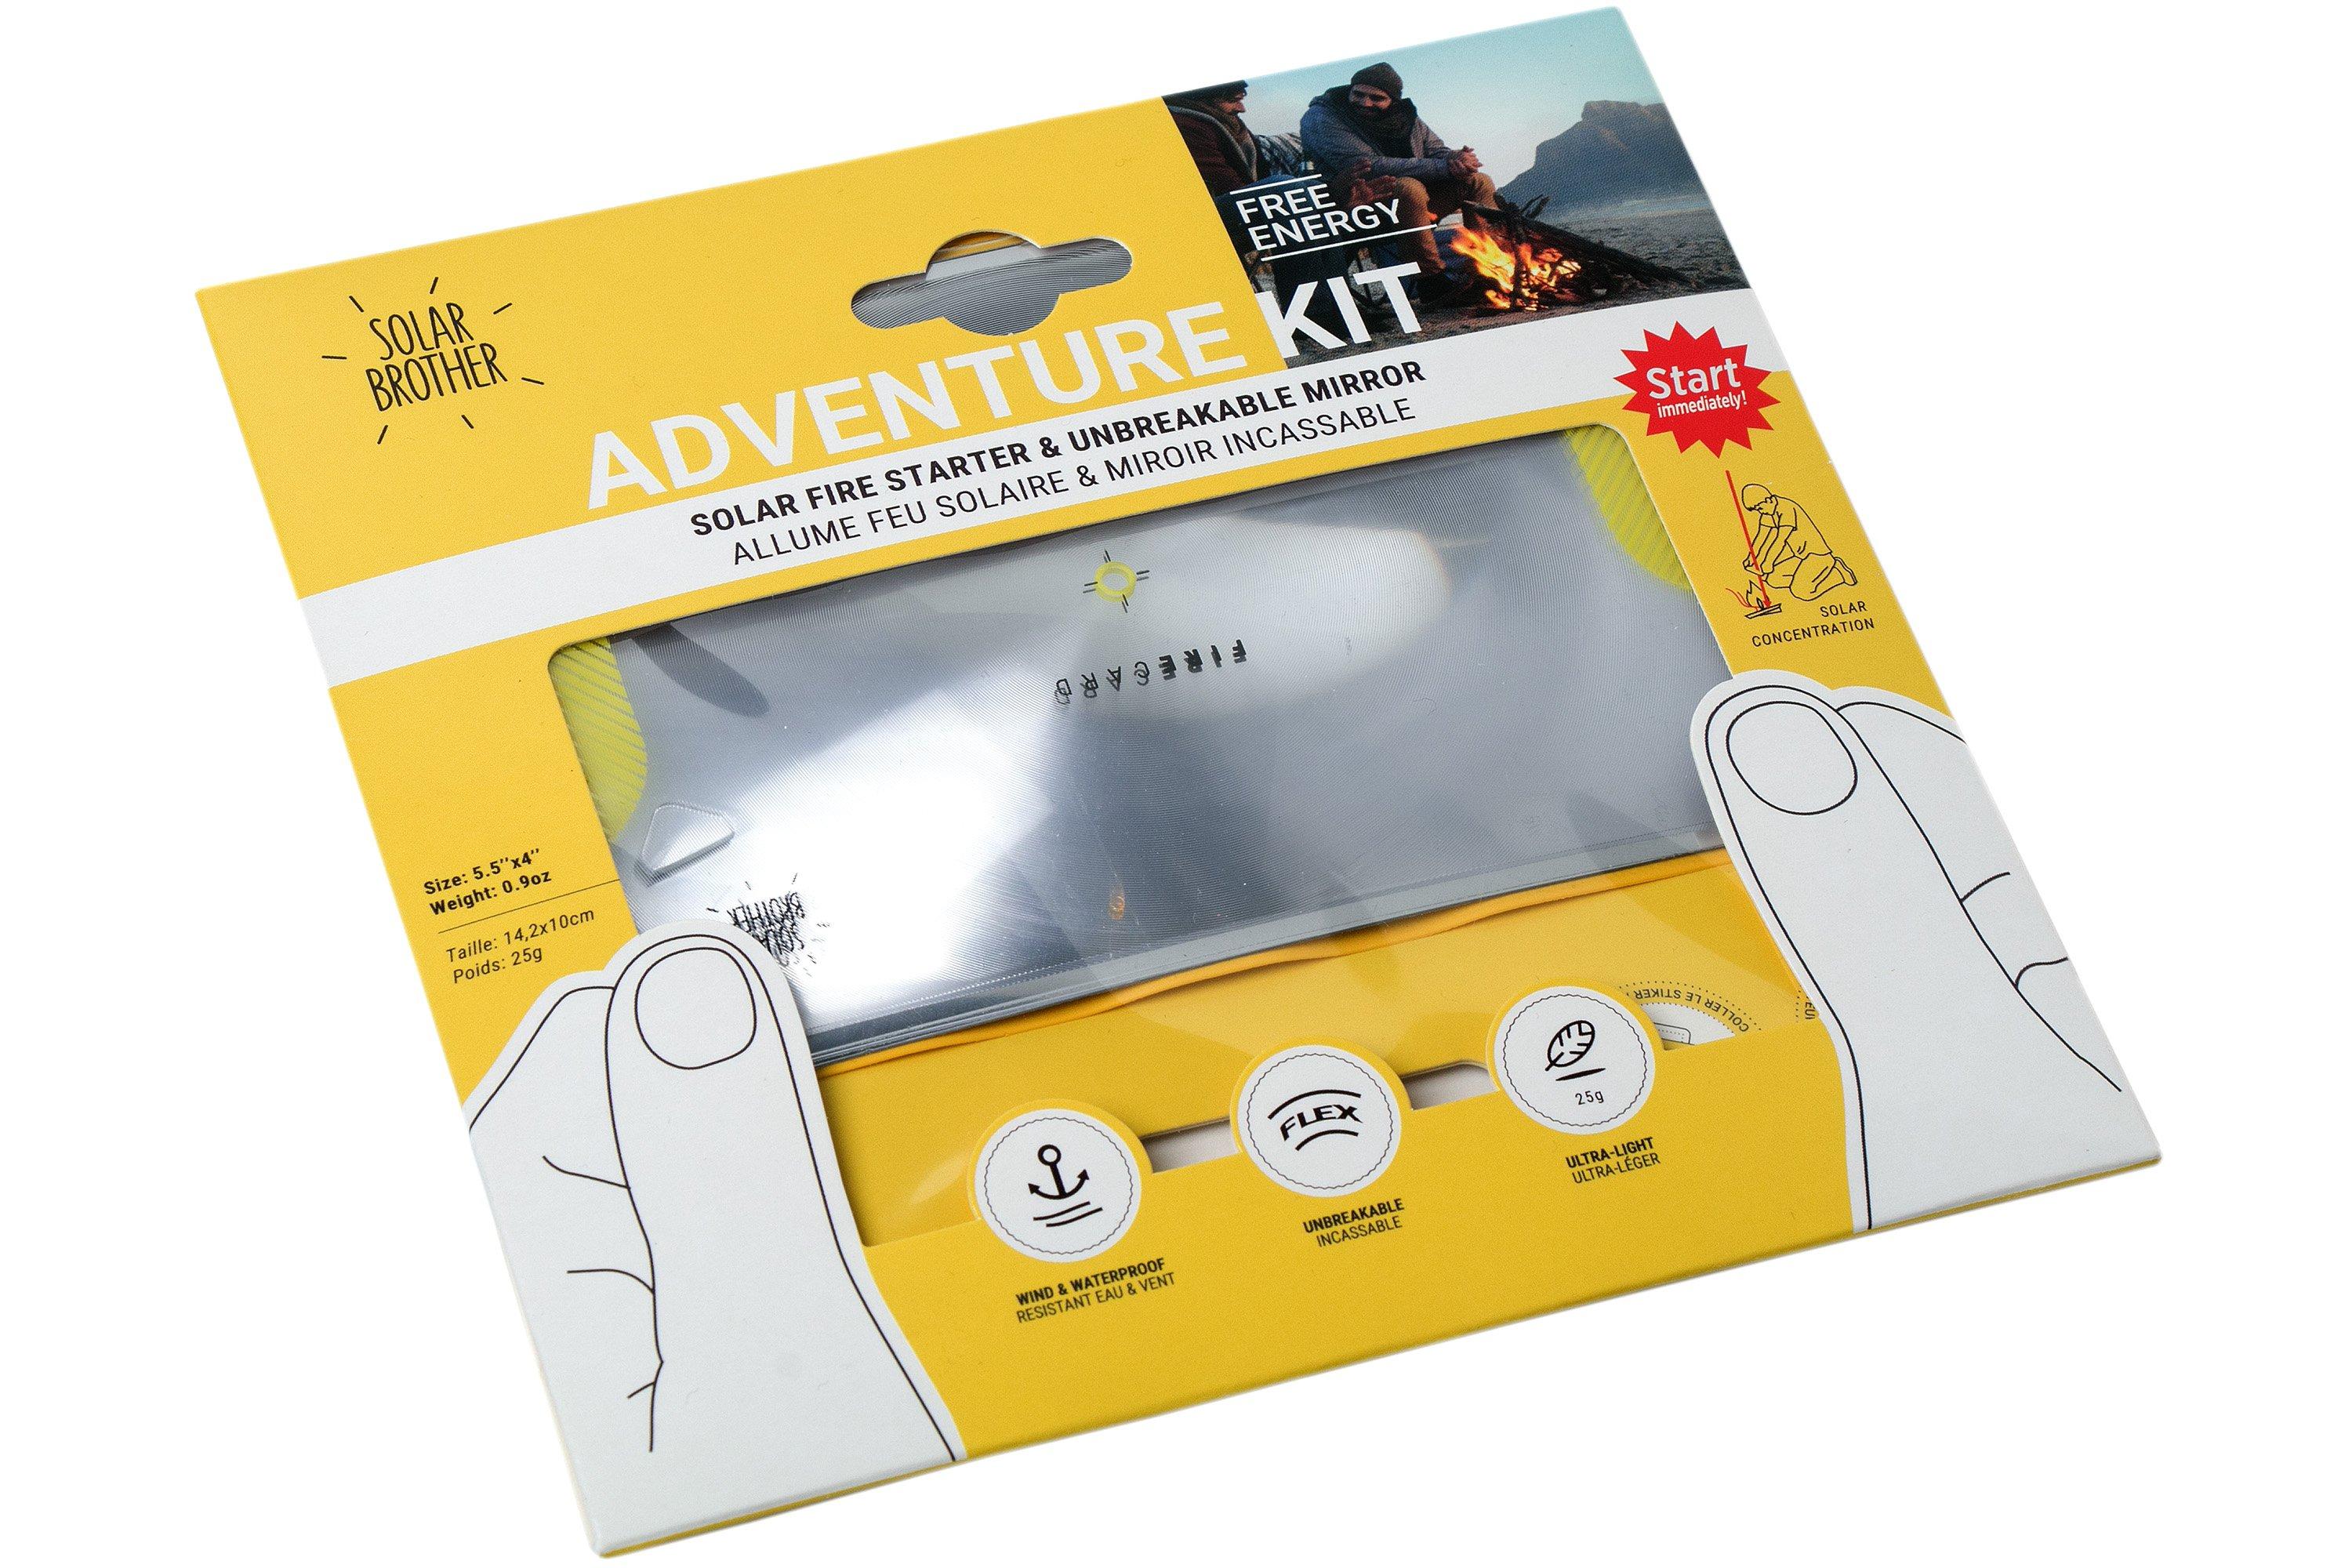 sog adventure kit